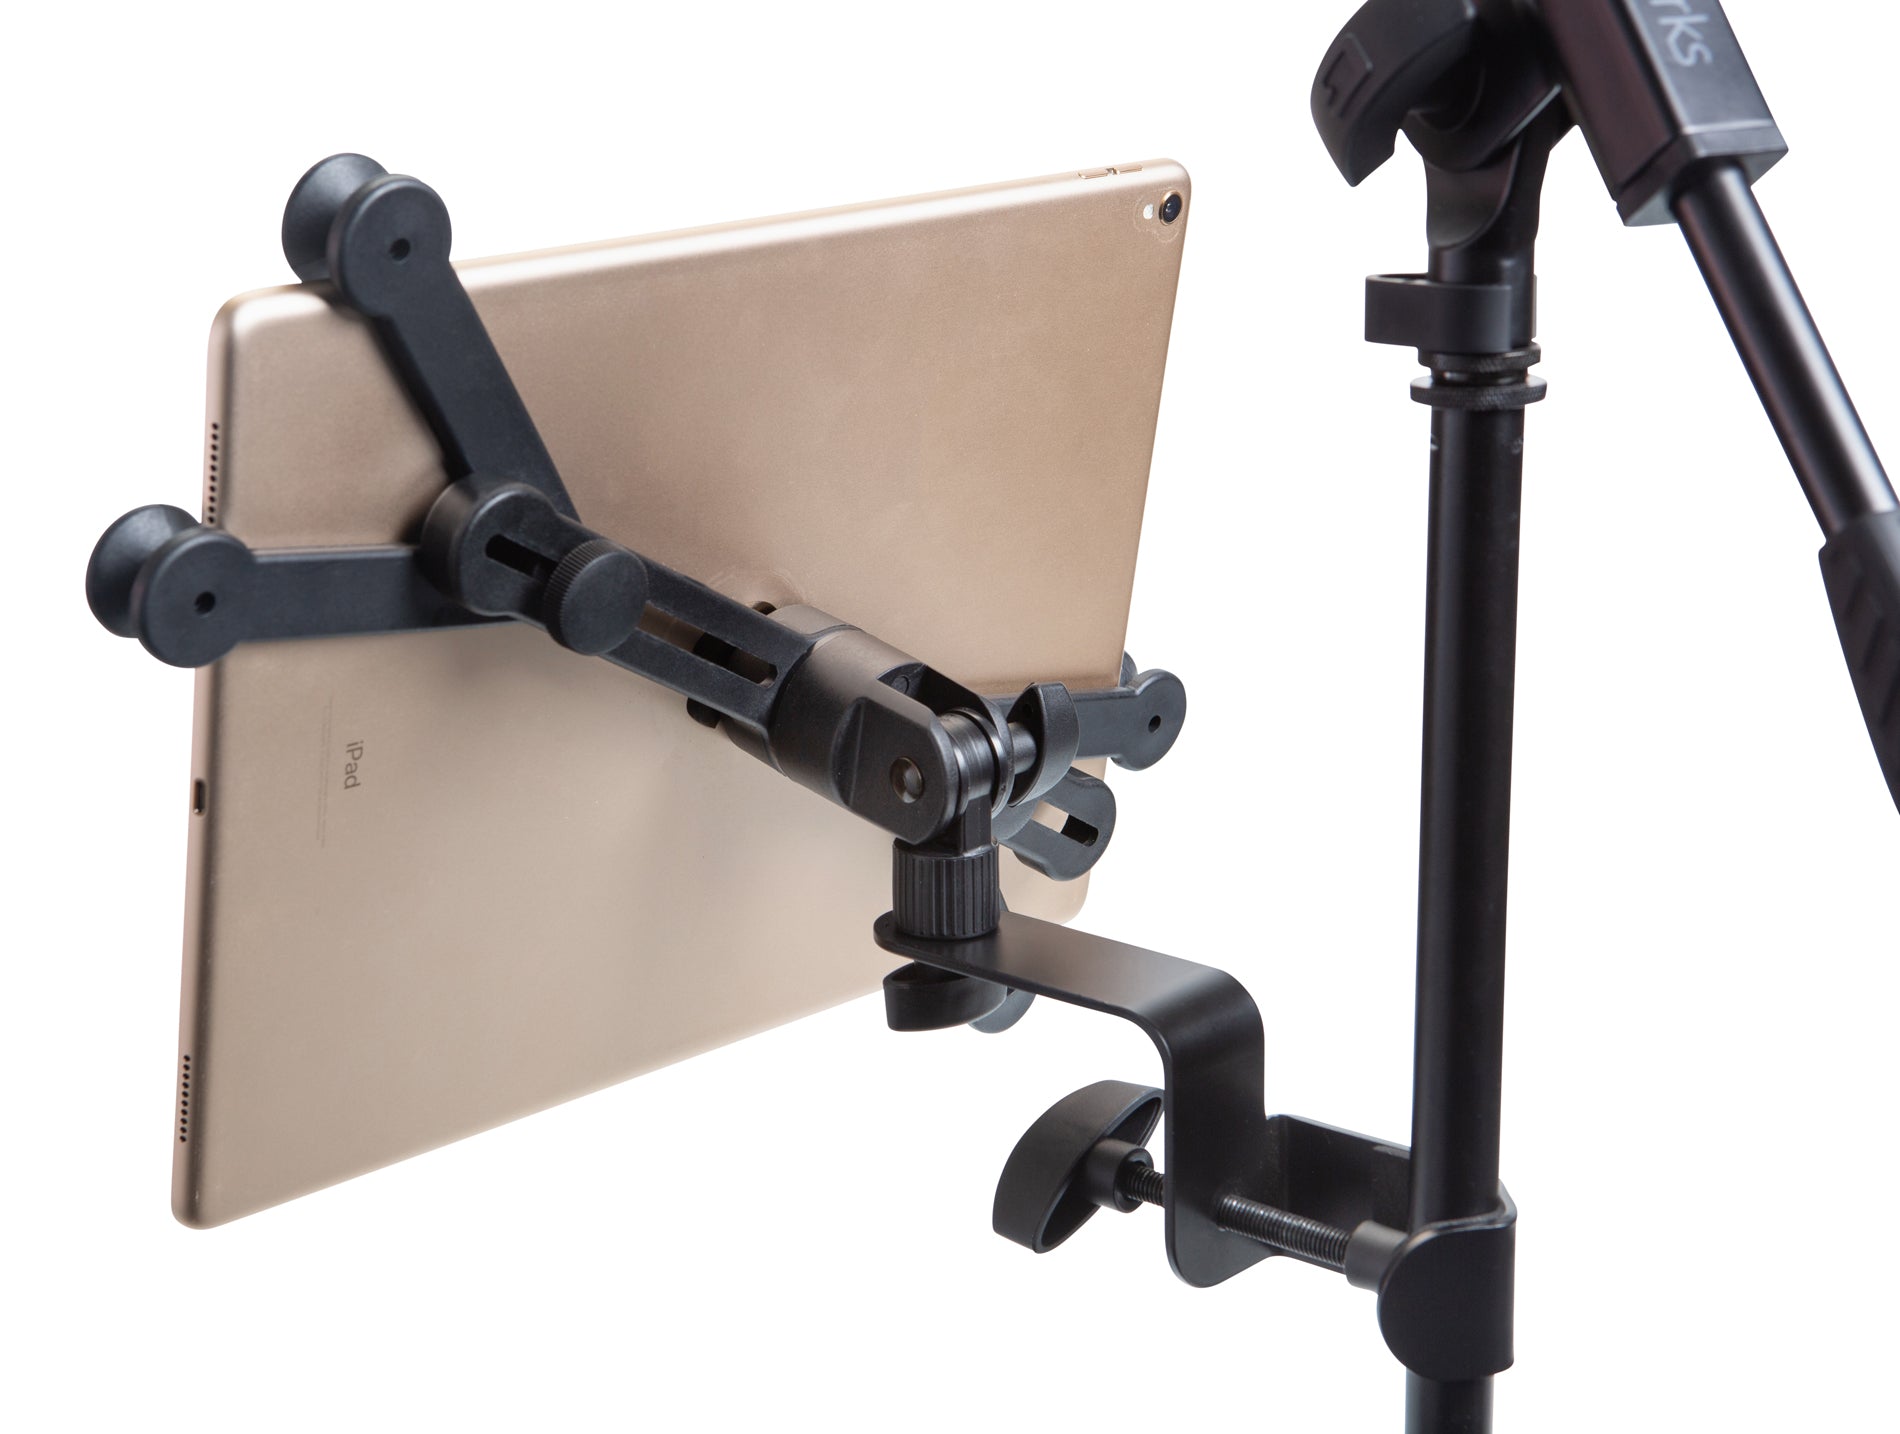 Gator Frameworks | Universal Tablet Mount with Corner Grip System